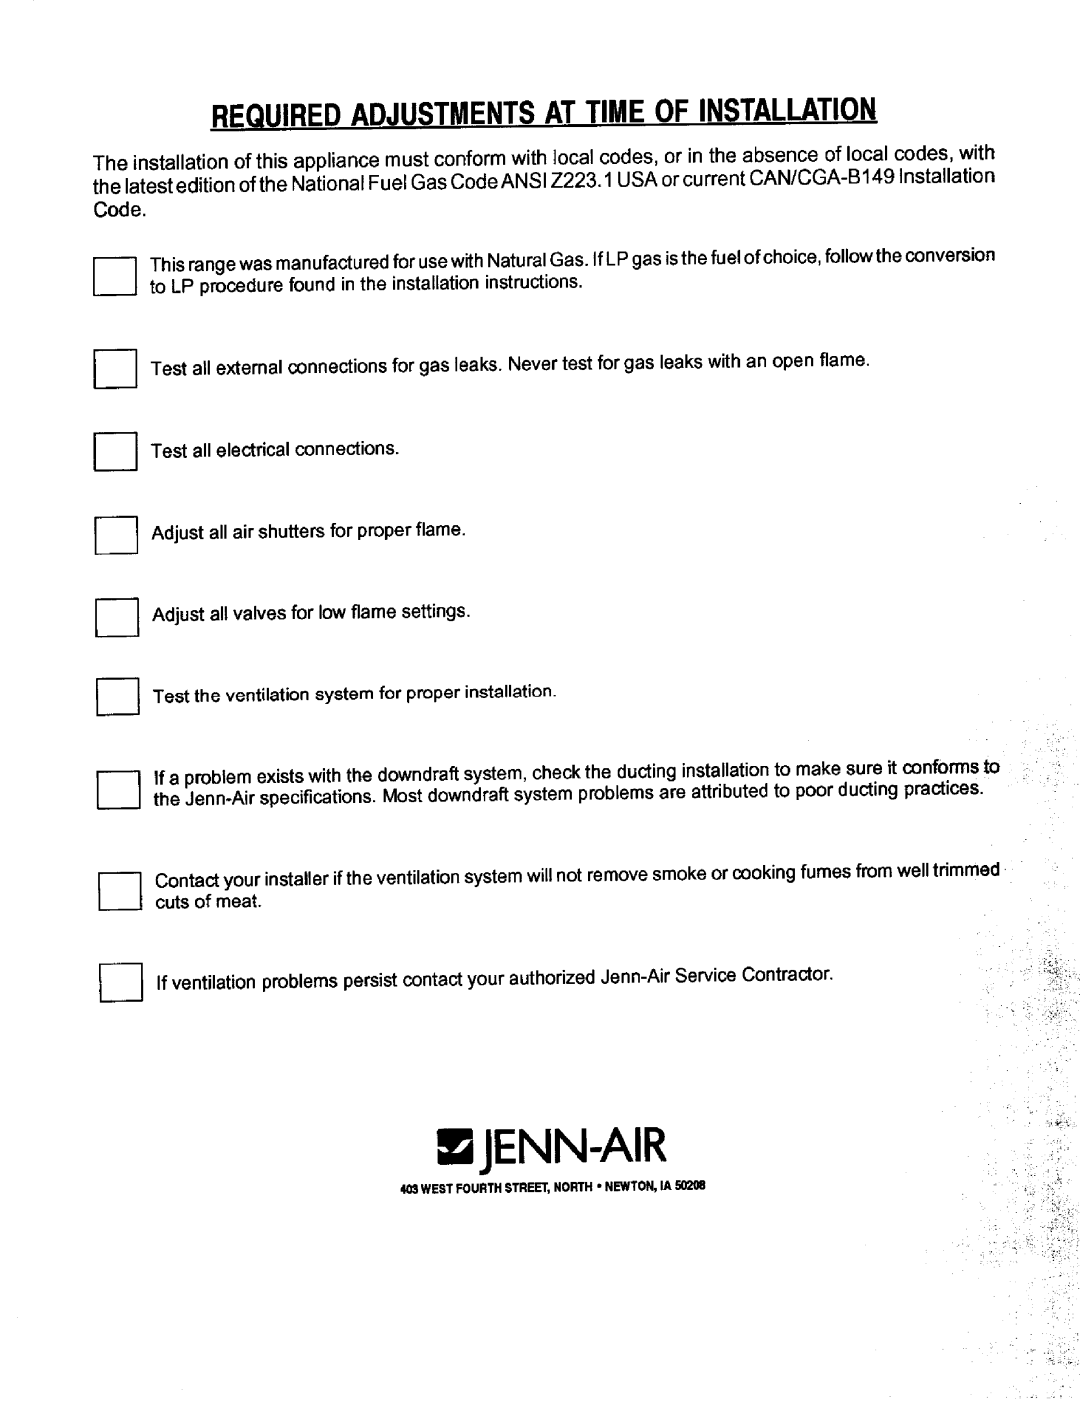 Jenn-Air JGD8345, JGD8130 installation manual Requiredadjustmentsattimeofinstallation, Code, I----I, Wjenn-Air 